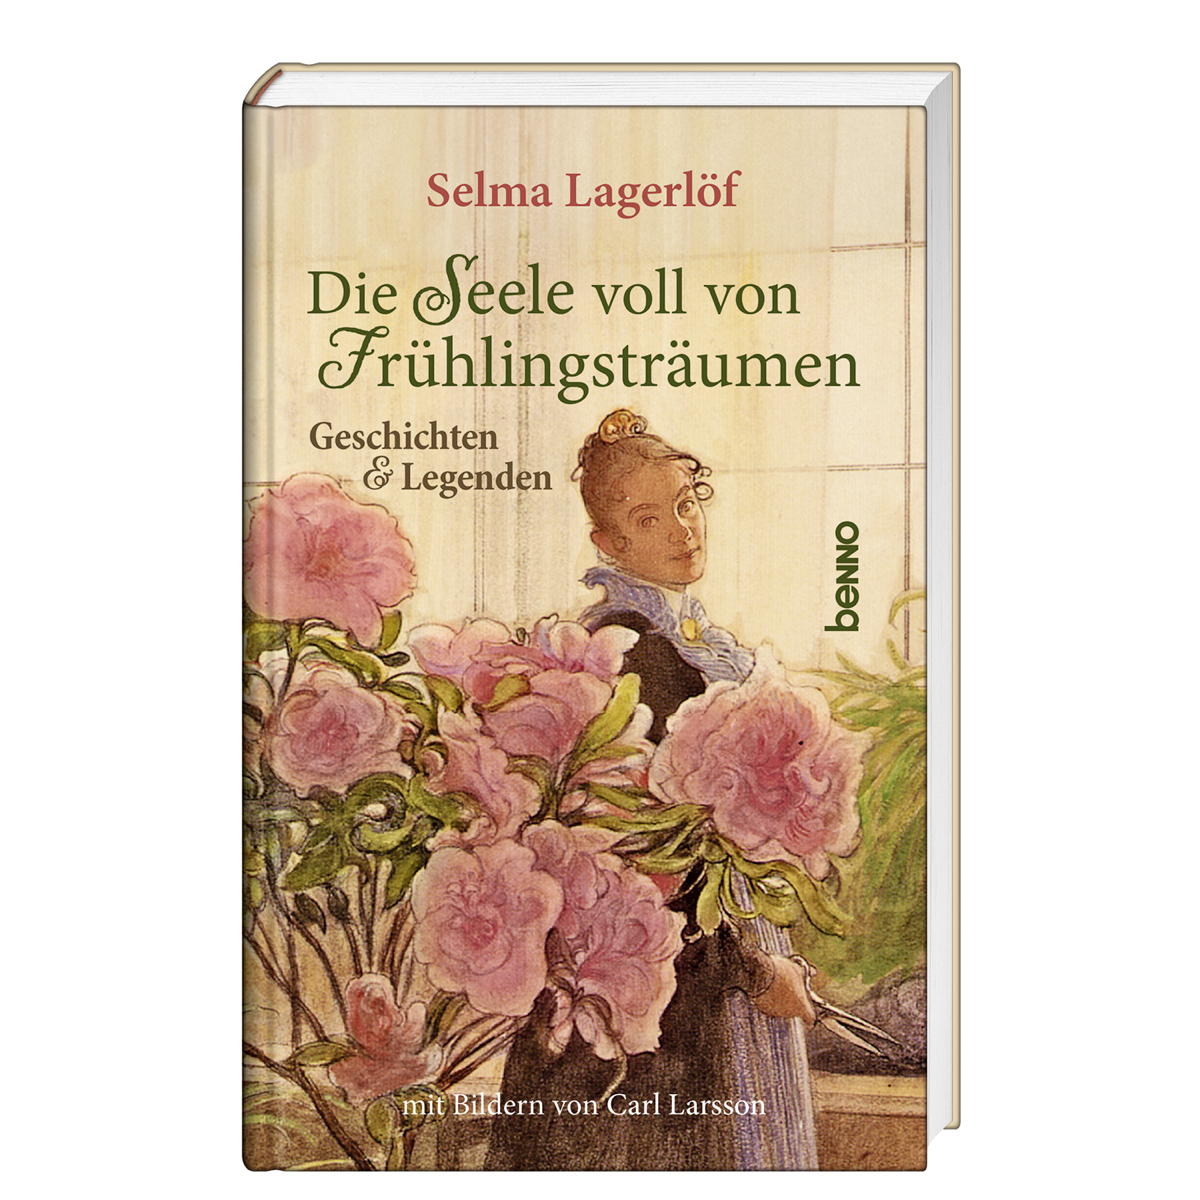 Die Seele voll von Frühlingsträumen von St. Benno Verlag